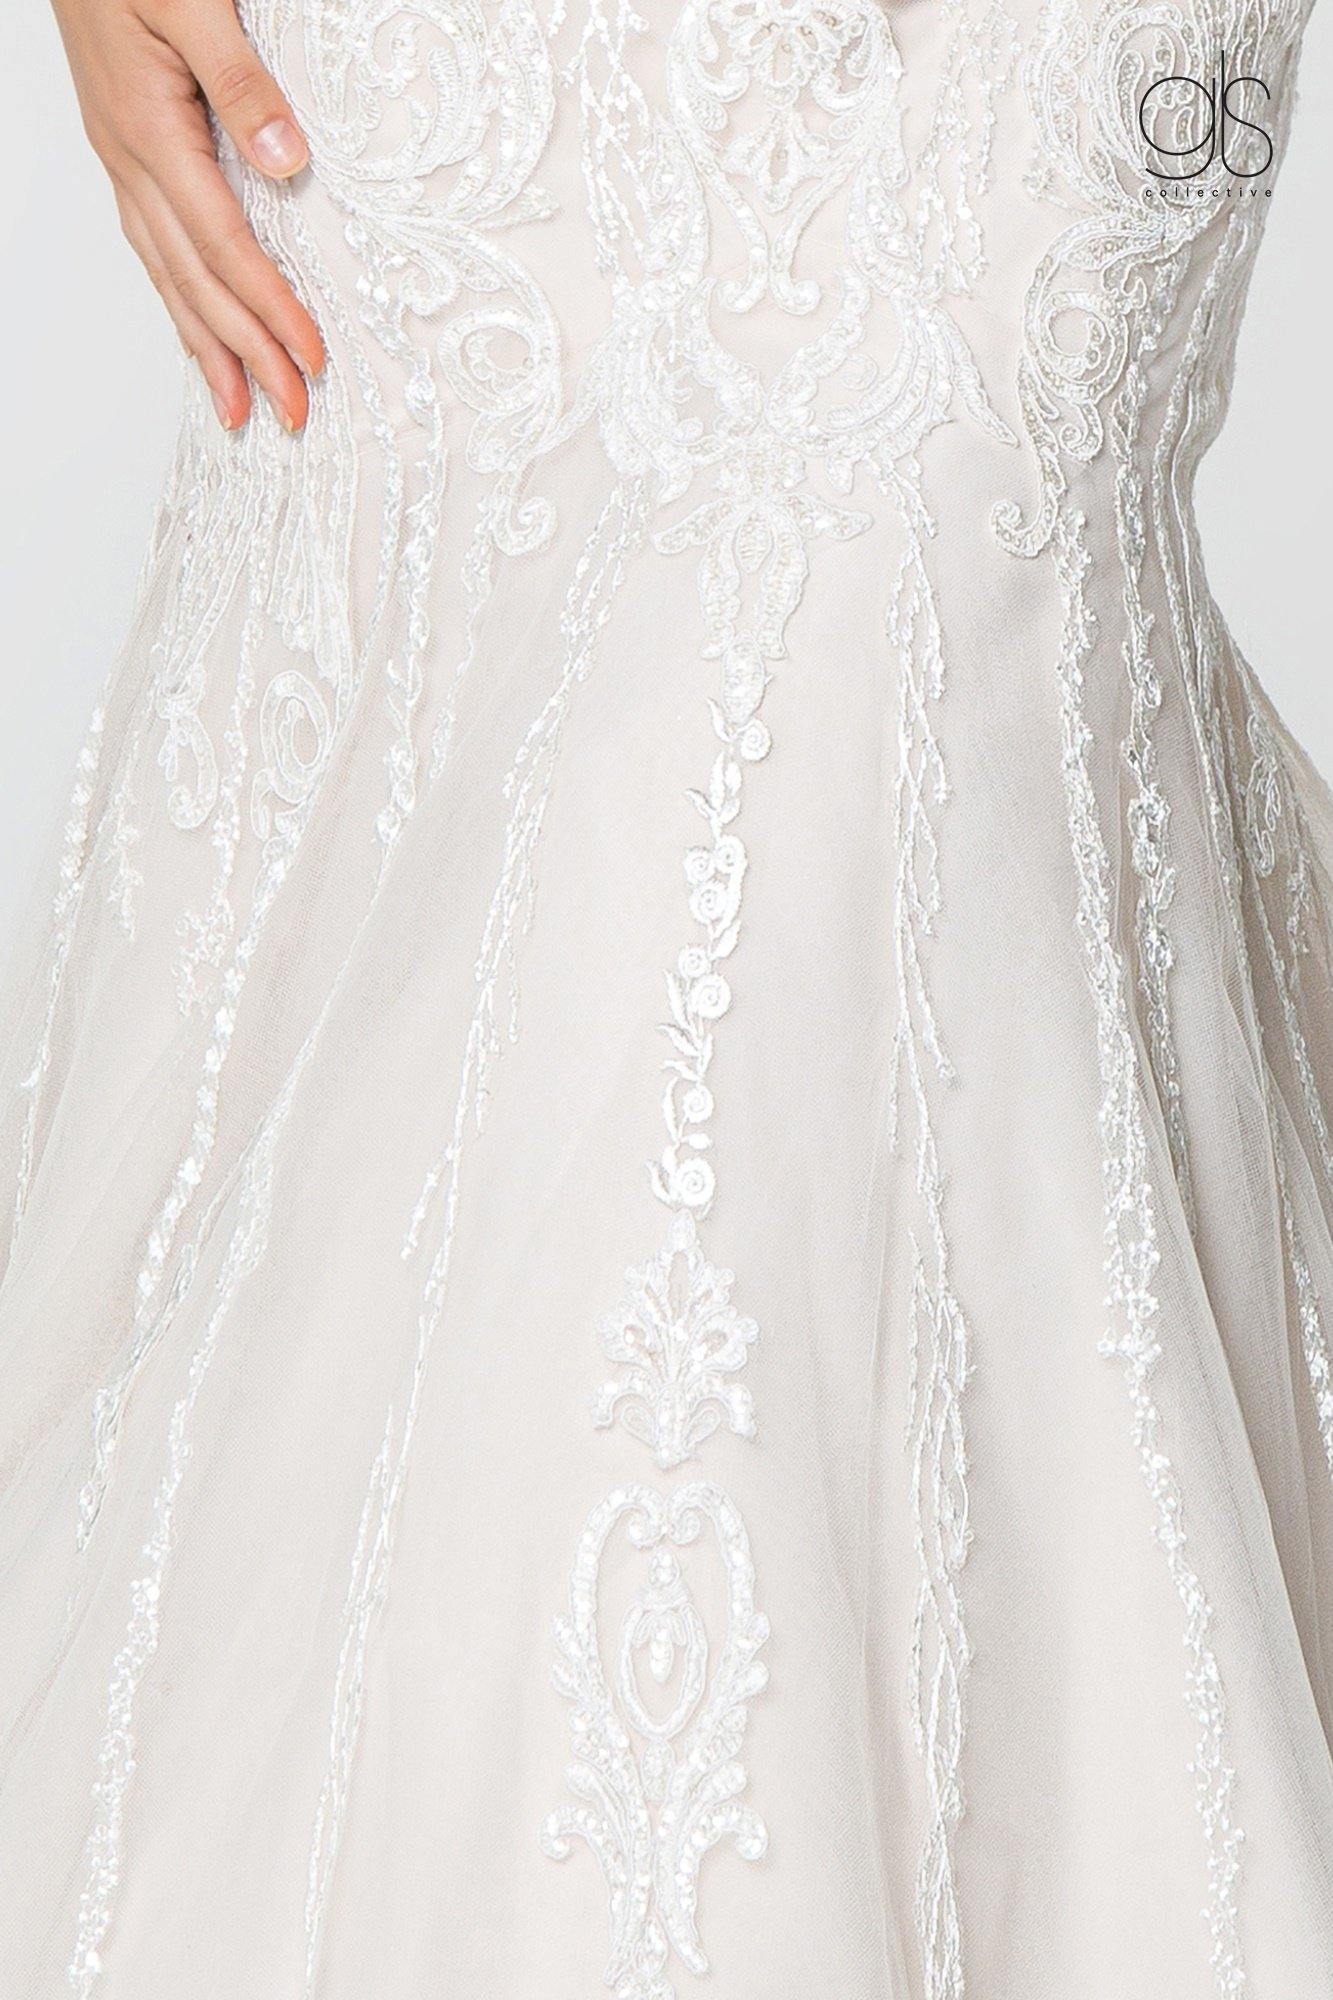 Bridal Long Gown Lace Embellished V-Neck Wedding Dress - The Dress Outlet Elizabeth K